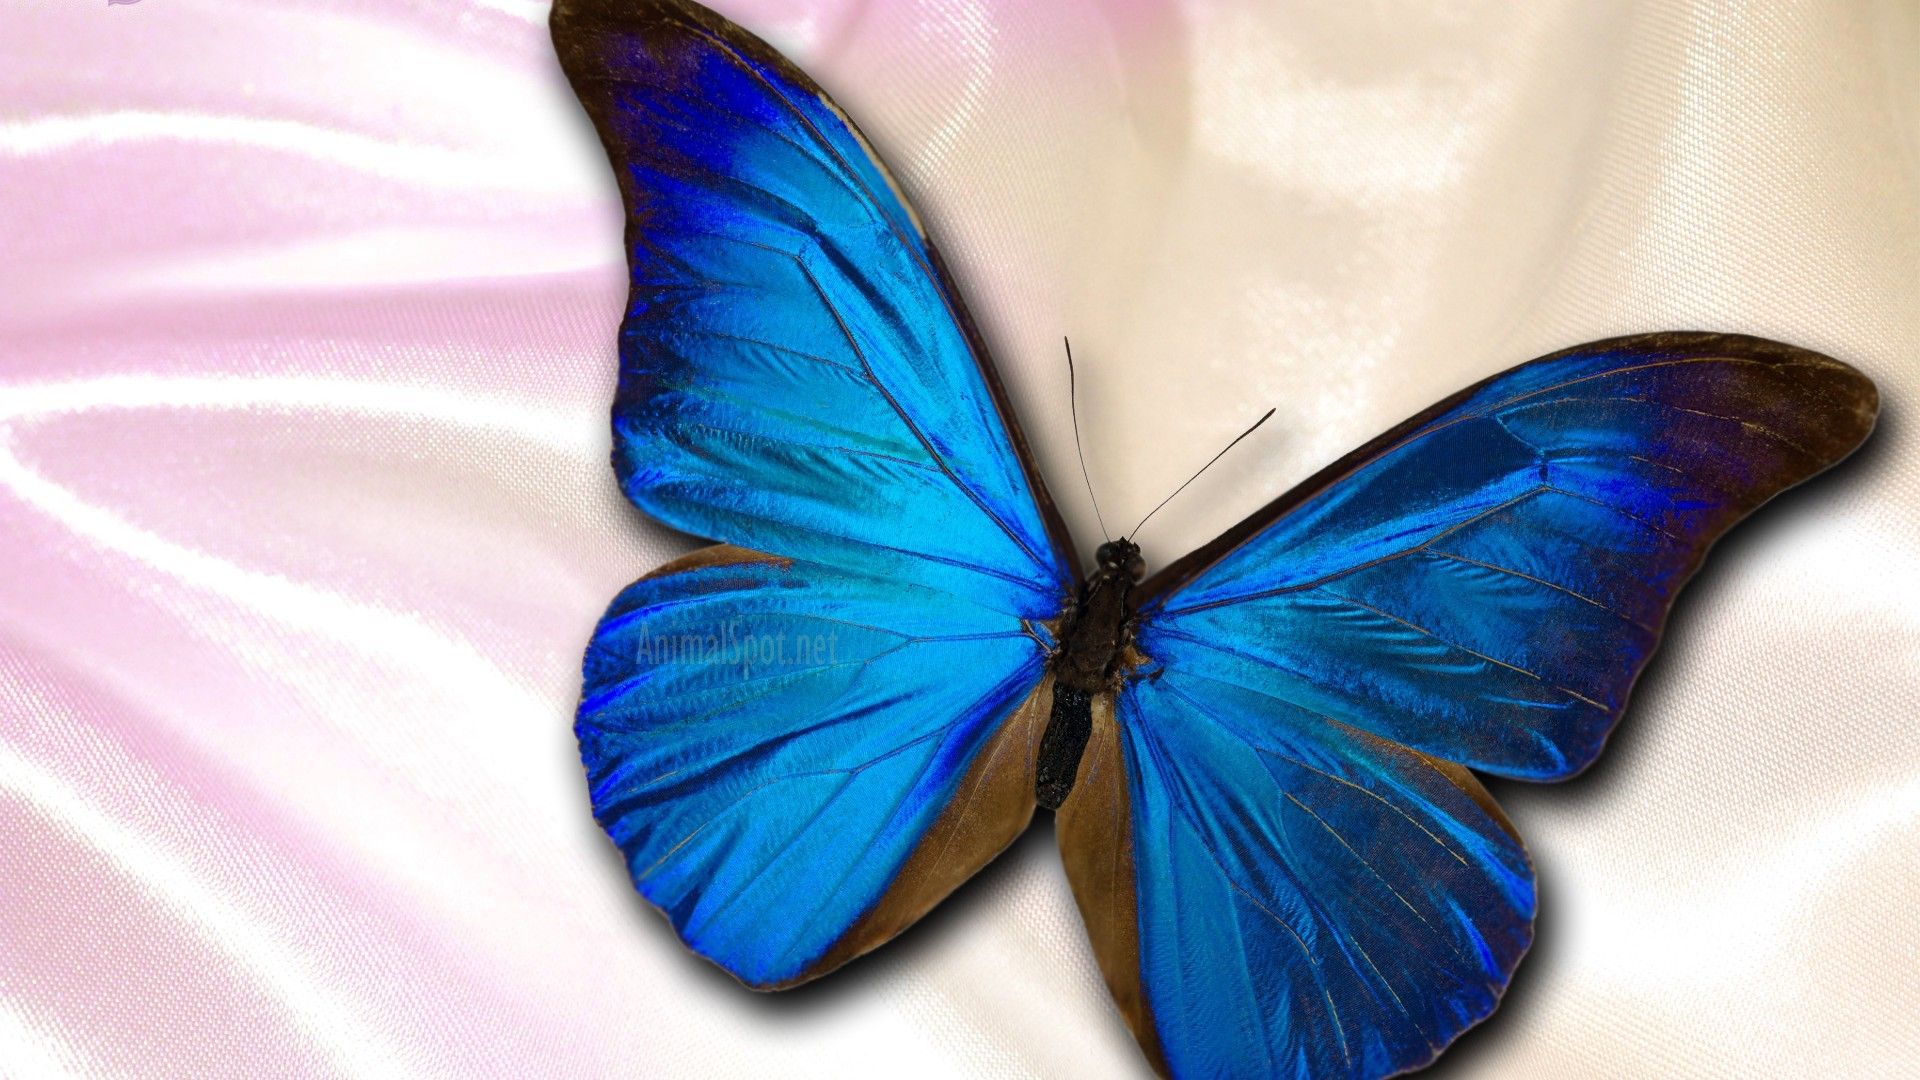 Blue Butterfly Desktop Wallpaper .wallpapercute.com